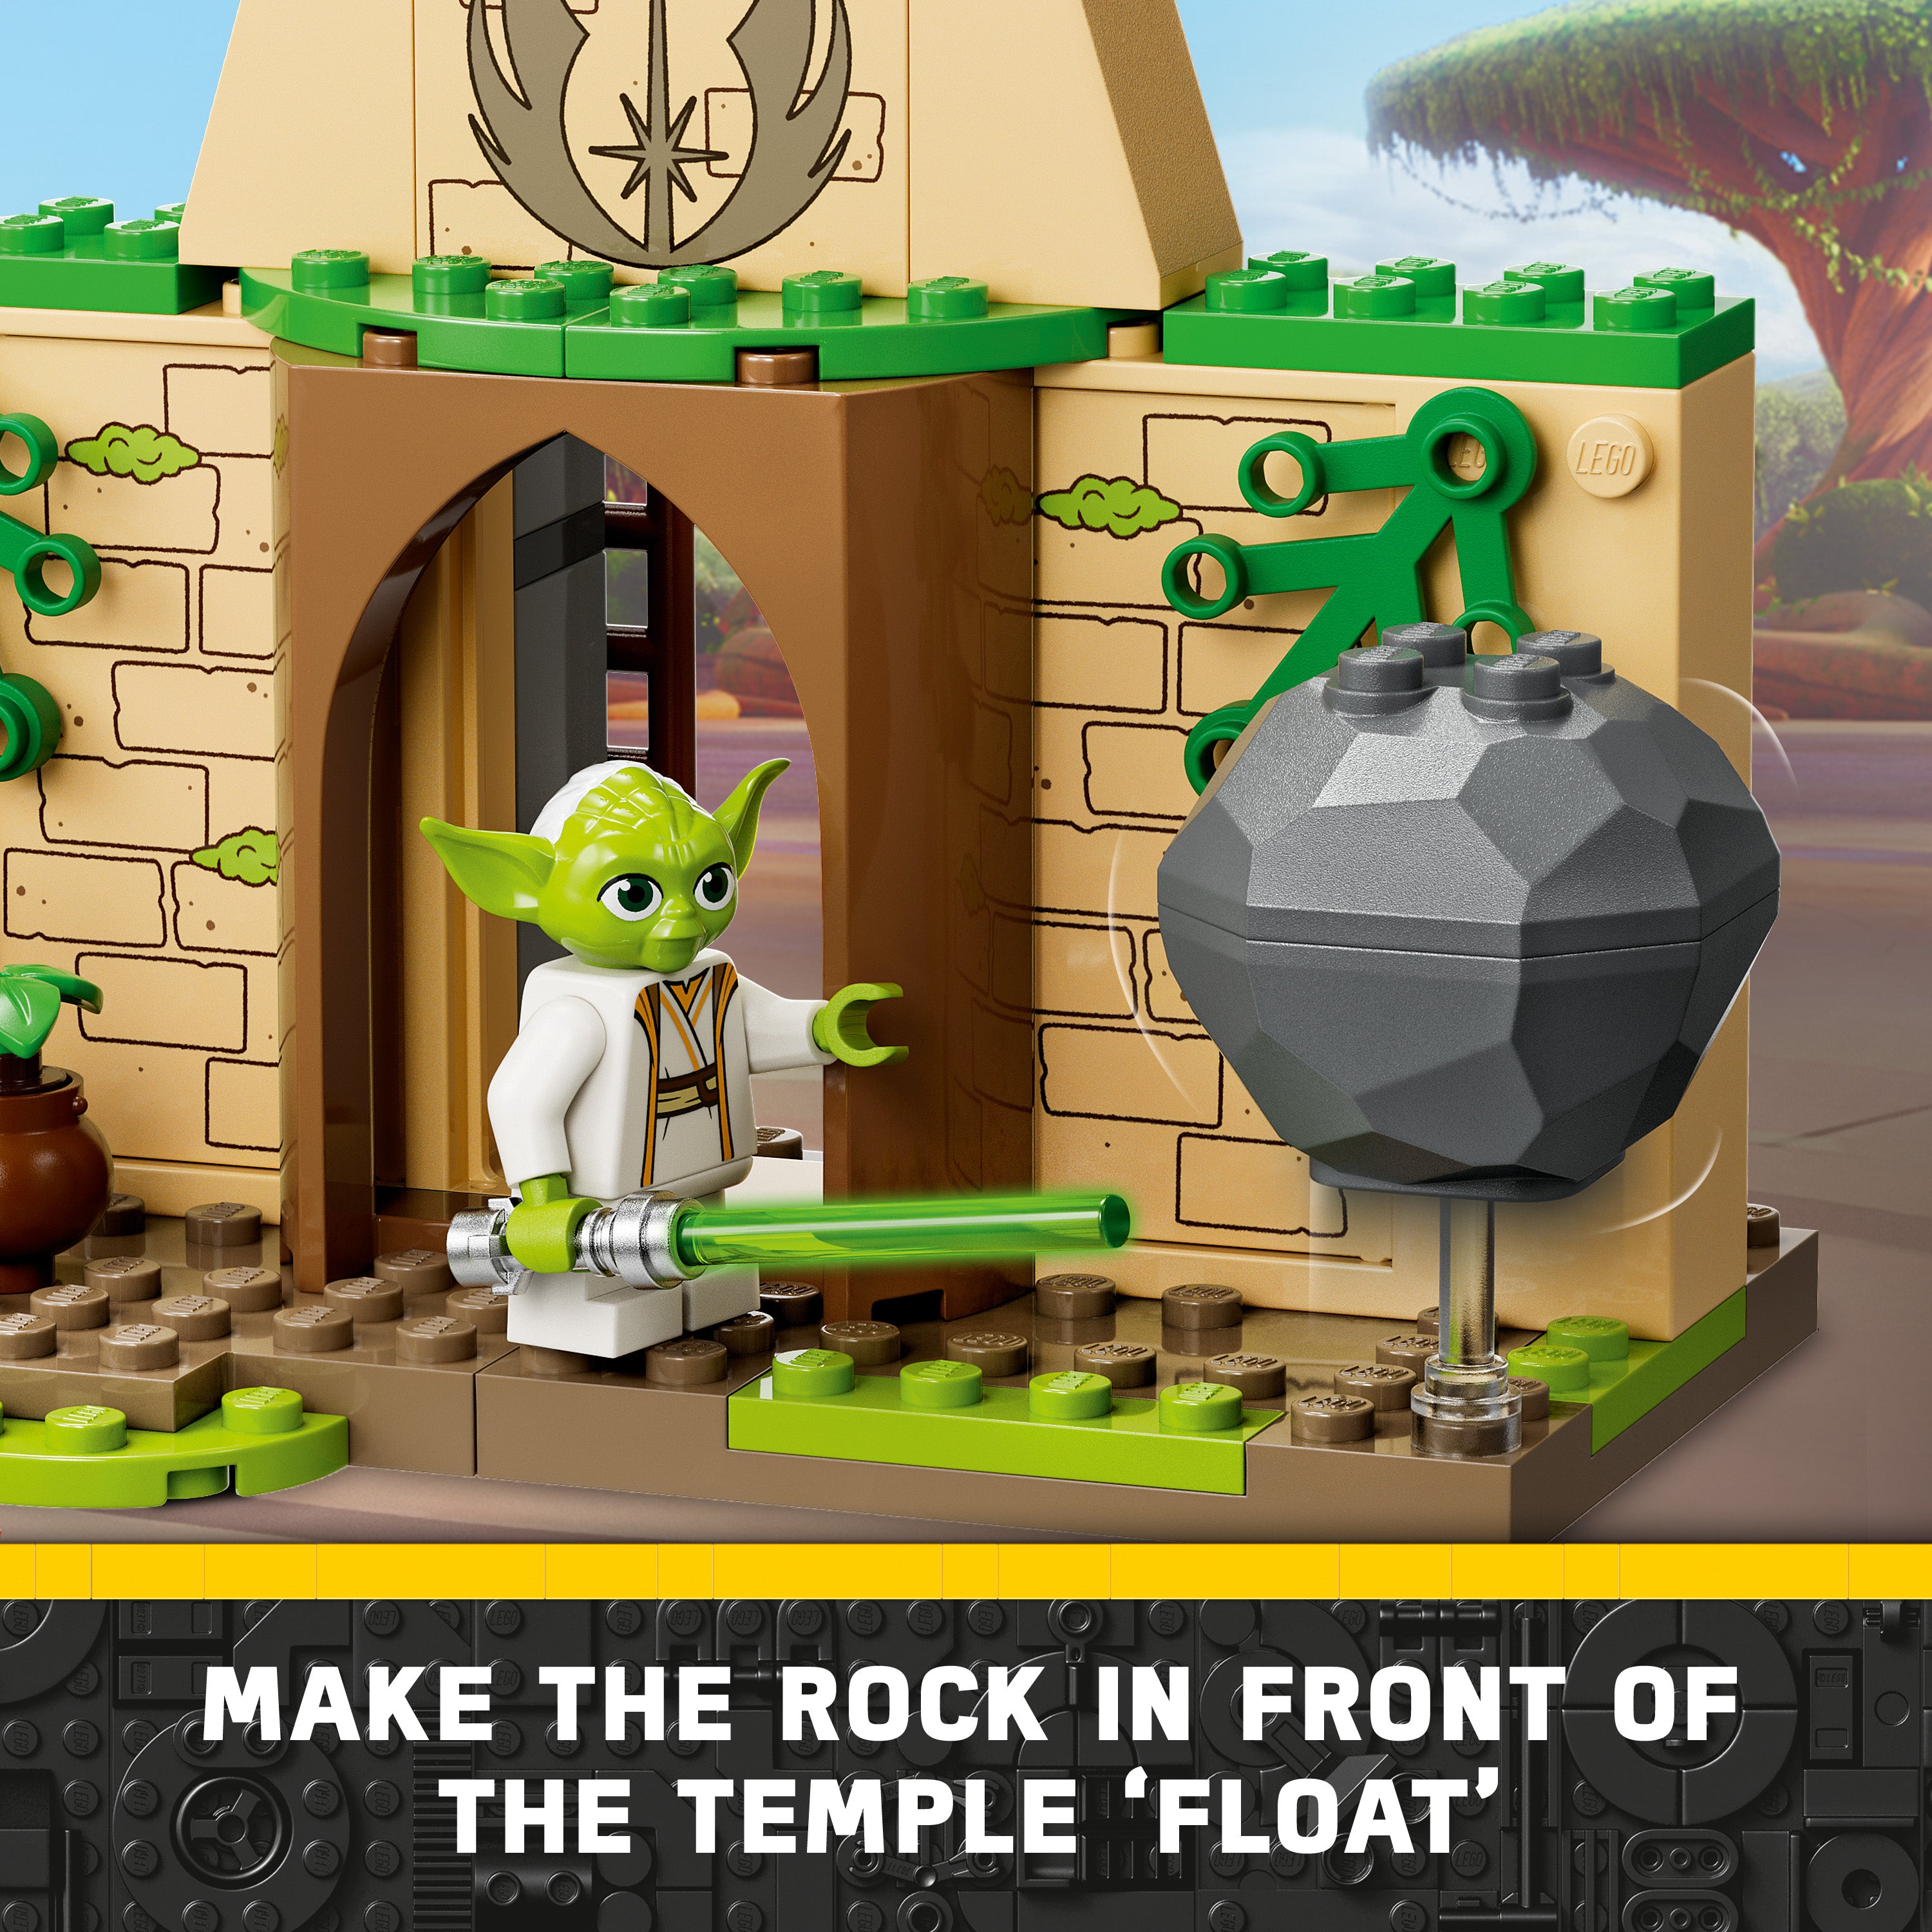 Lego 75358 Tenoo Jedi Temple